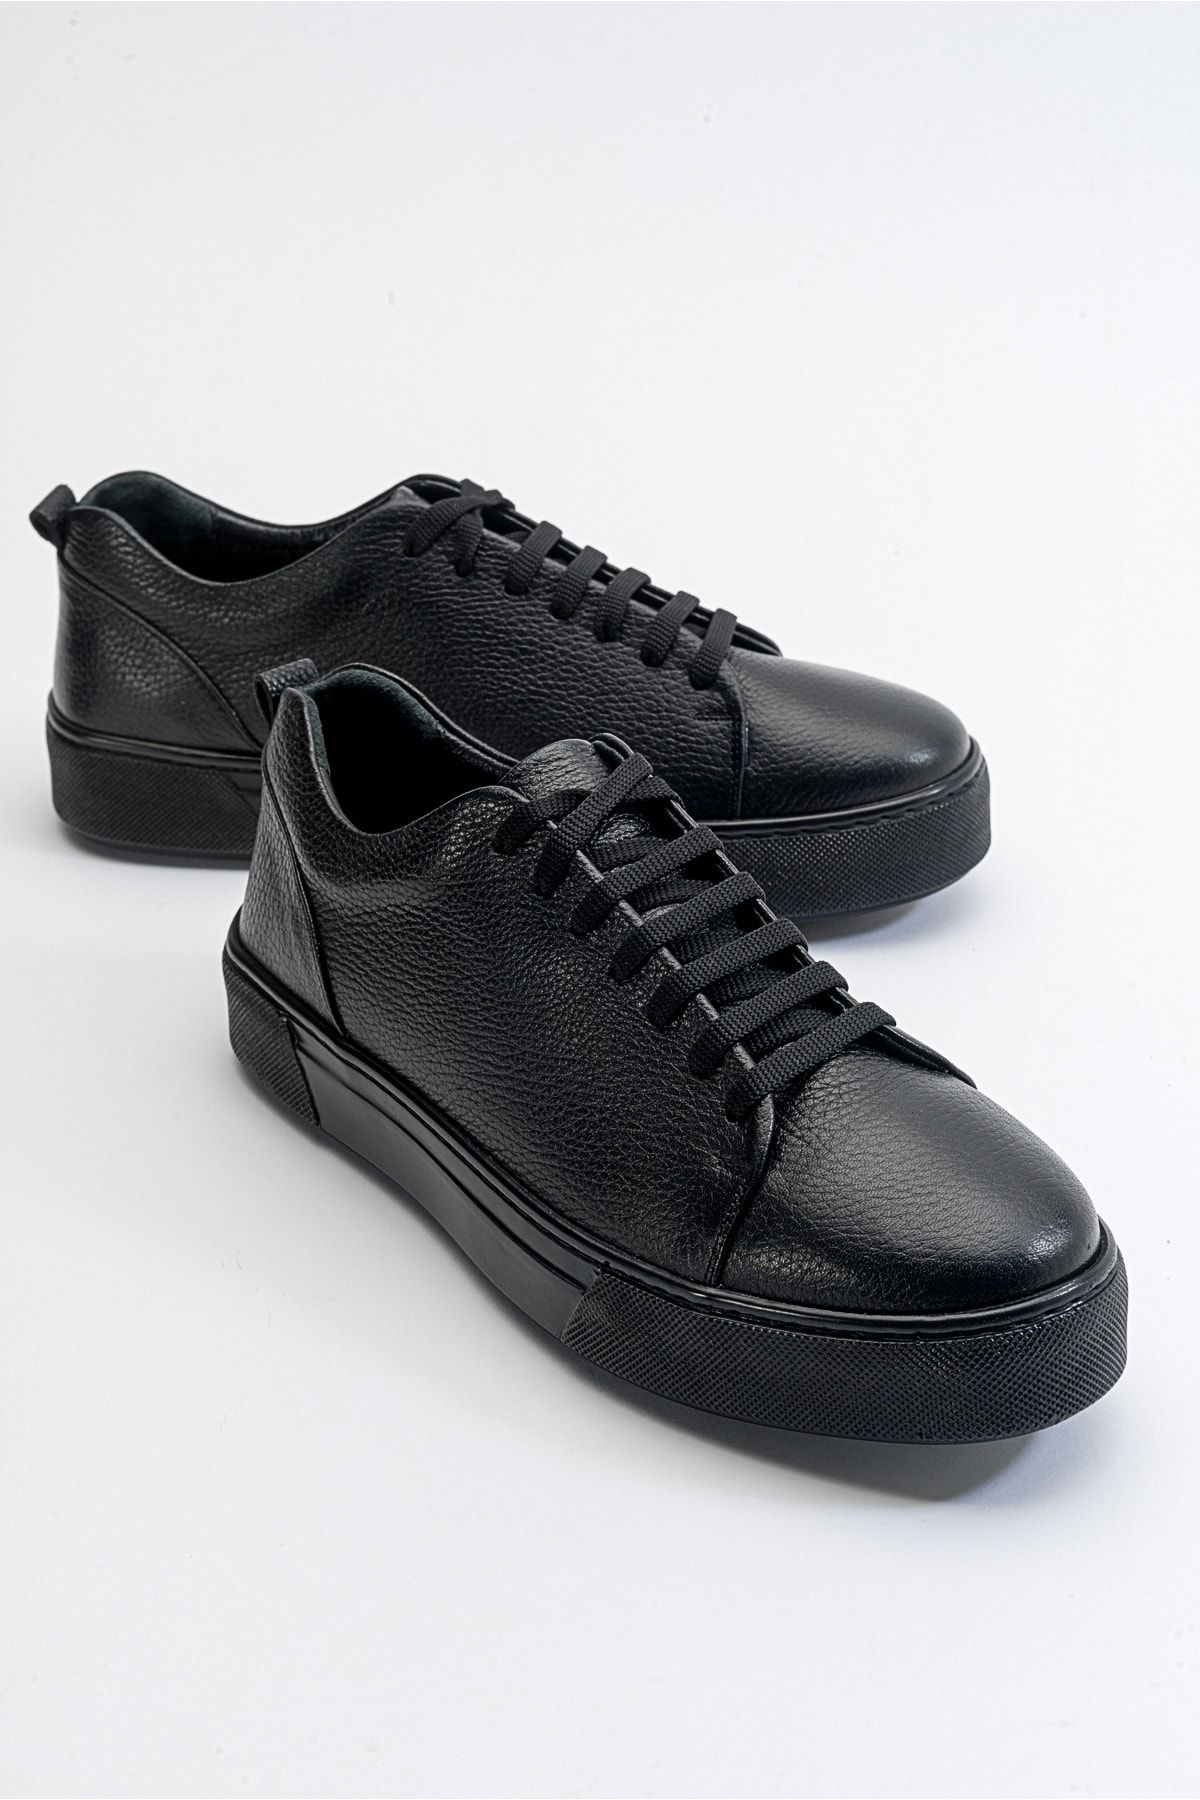 luvishoes Renno Siyah-siyah Deri Erkek Ayakkabı